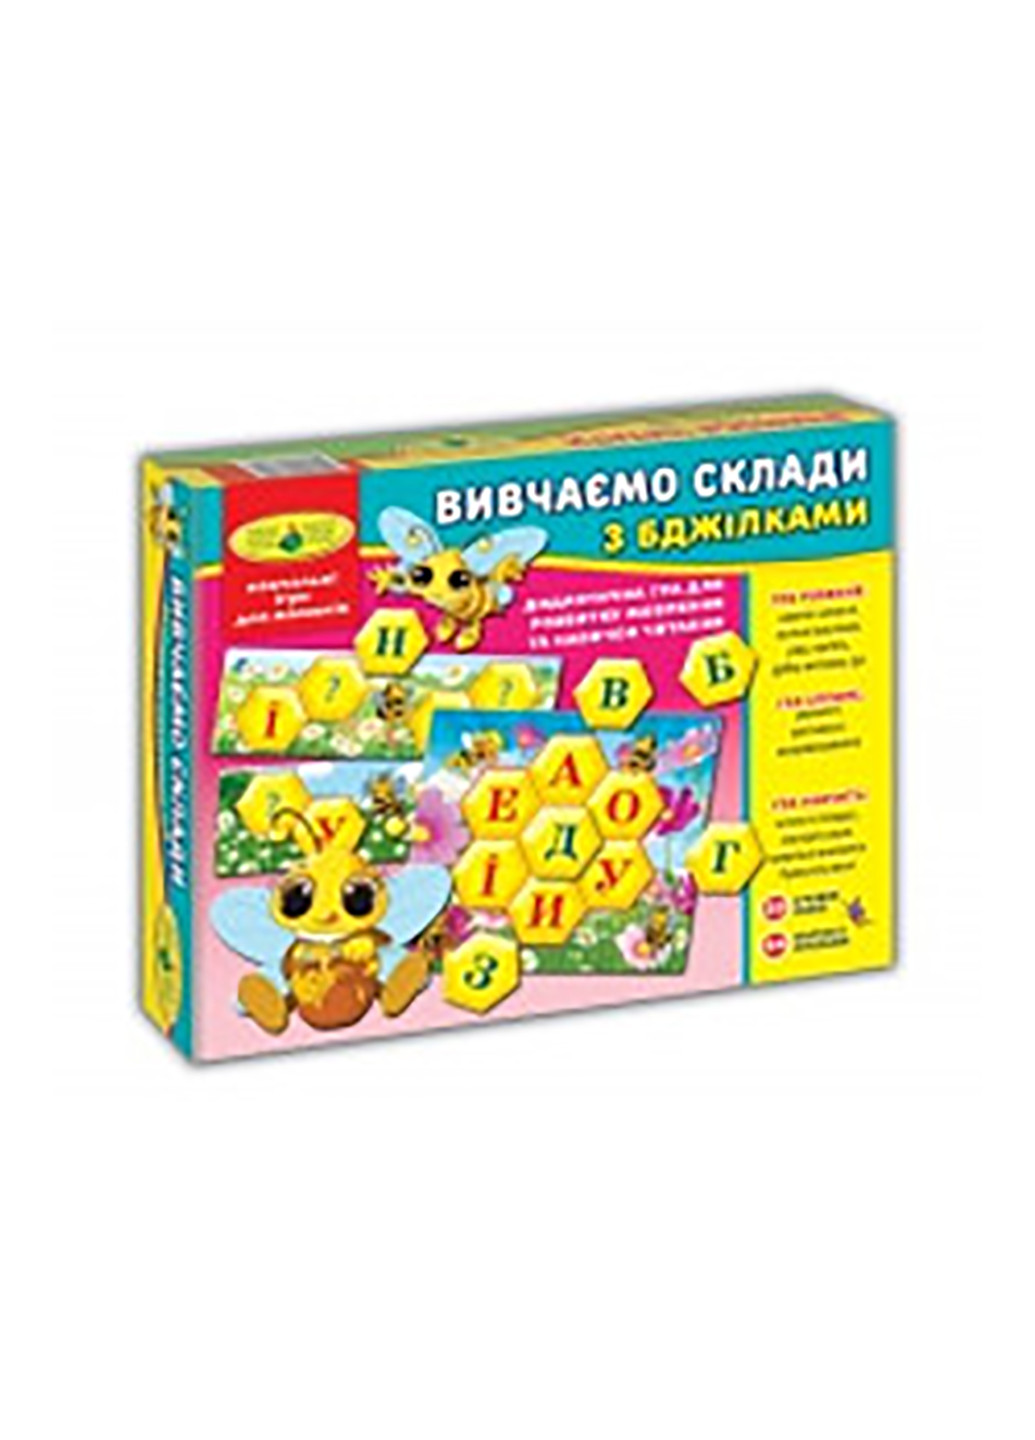 Игра "Изучаем склады с пчелками" Киевская фабрика игрушек 2616 (255293120)